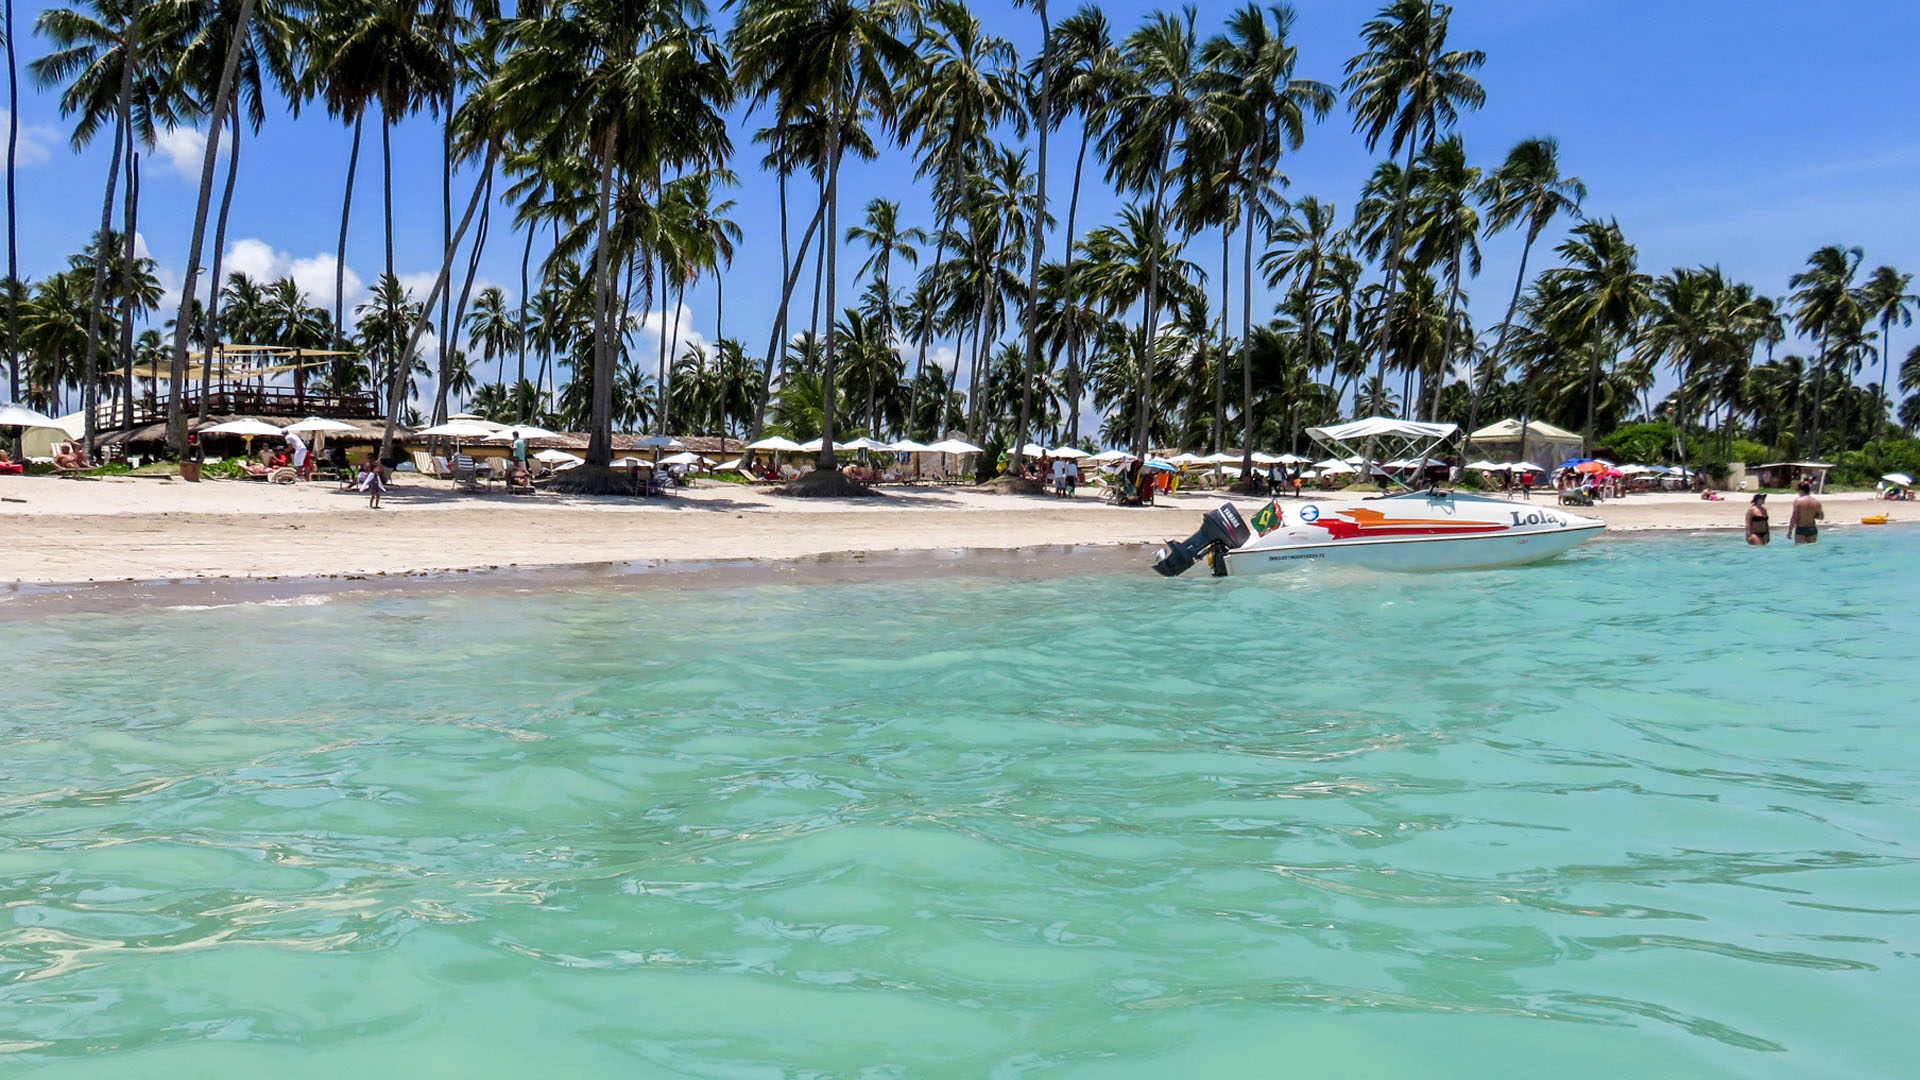 Resorts em praias calmas: Grand Oca Maragogi